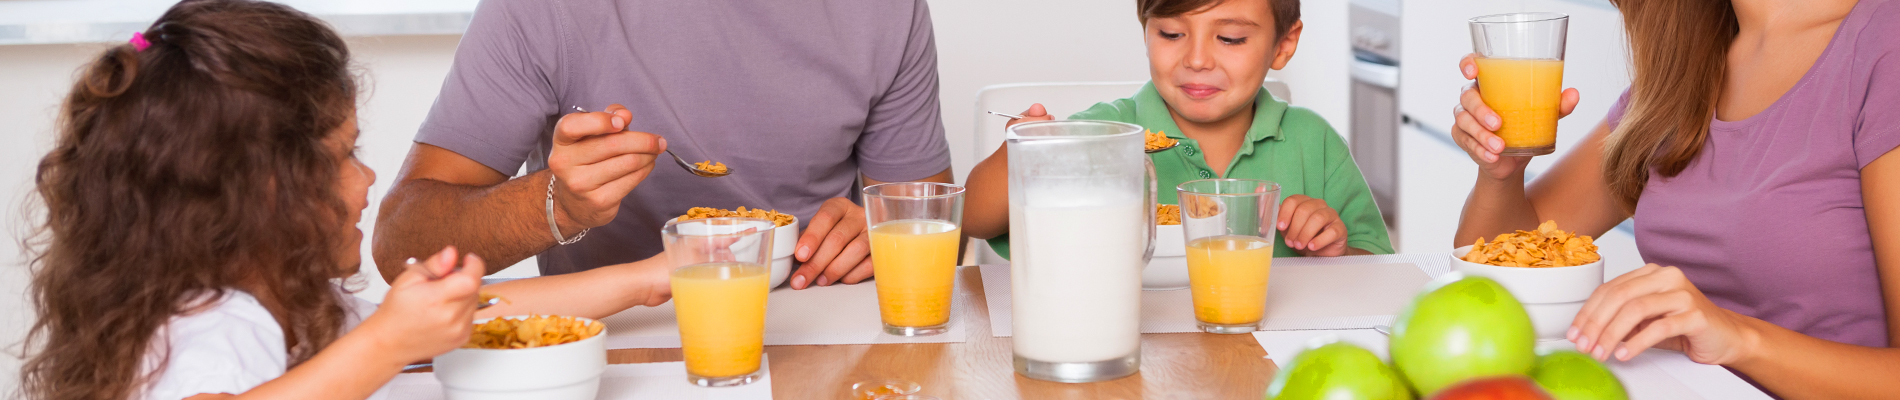 No Desayunar afecta al rendimiento escolar de los niños